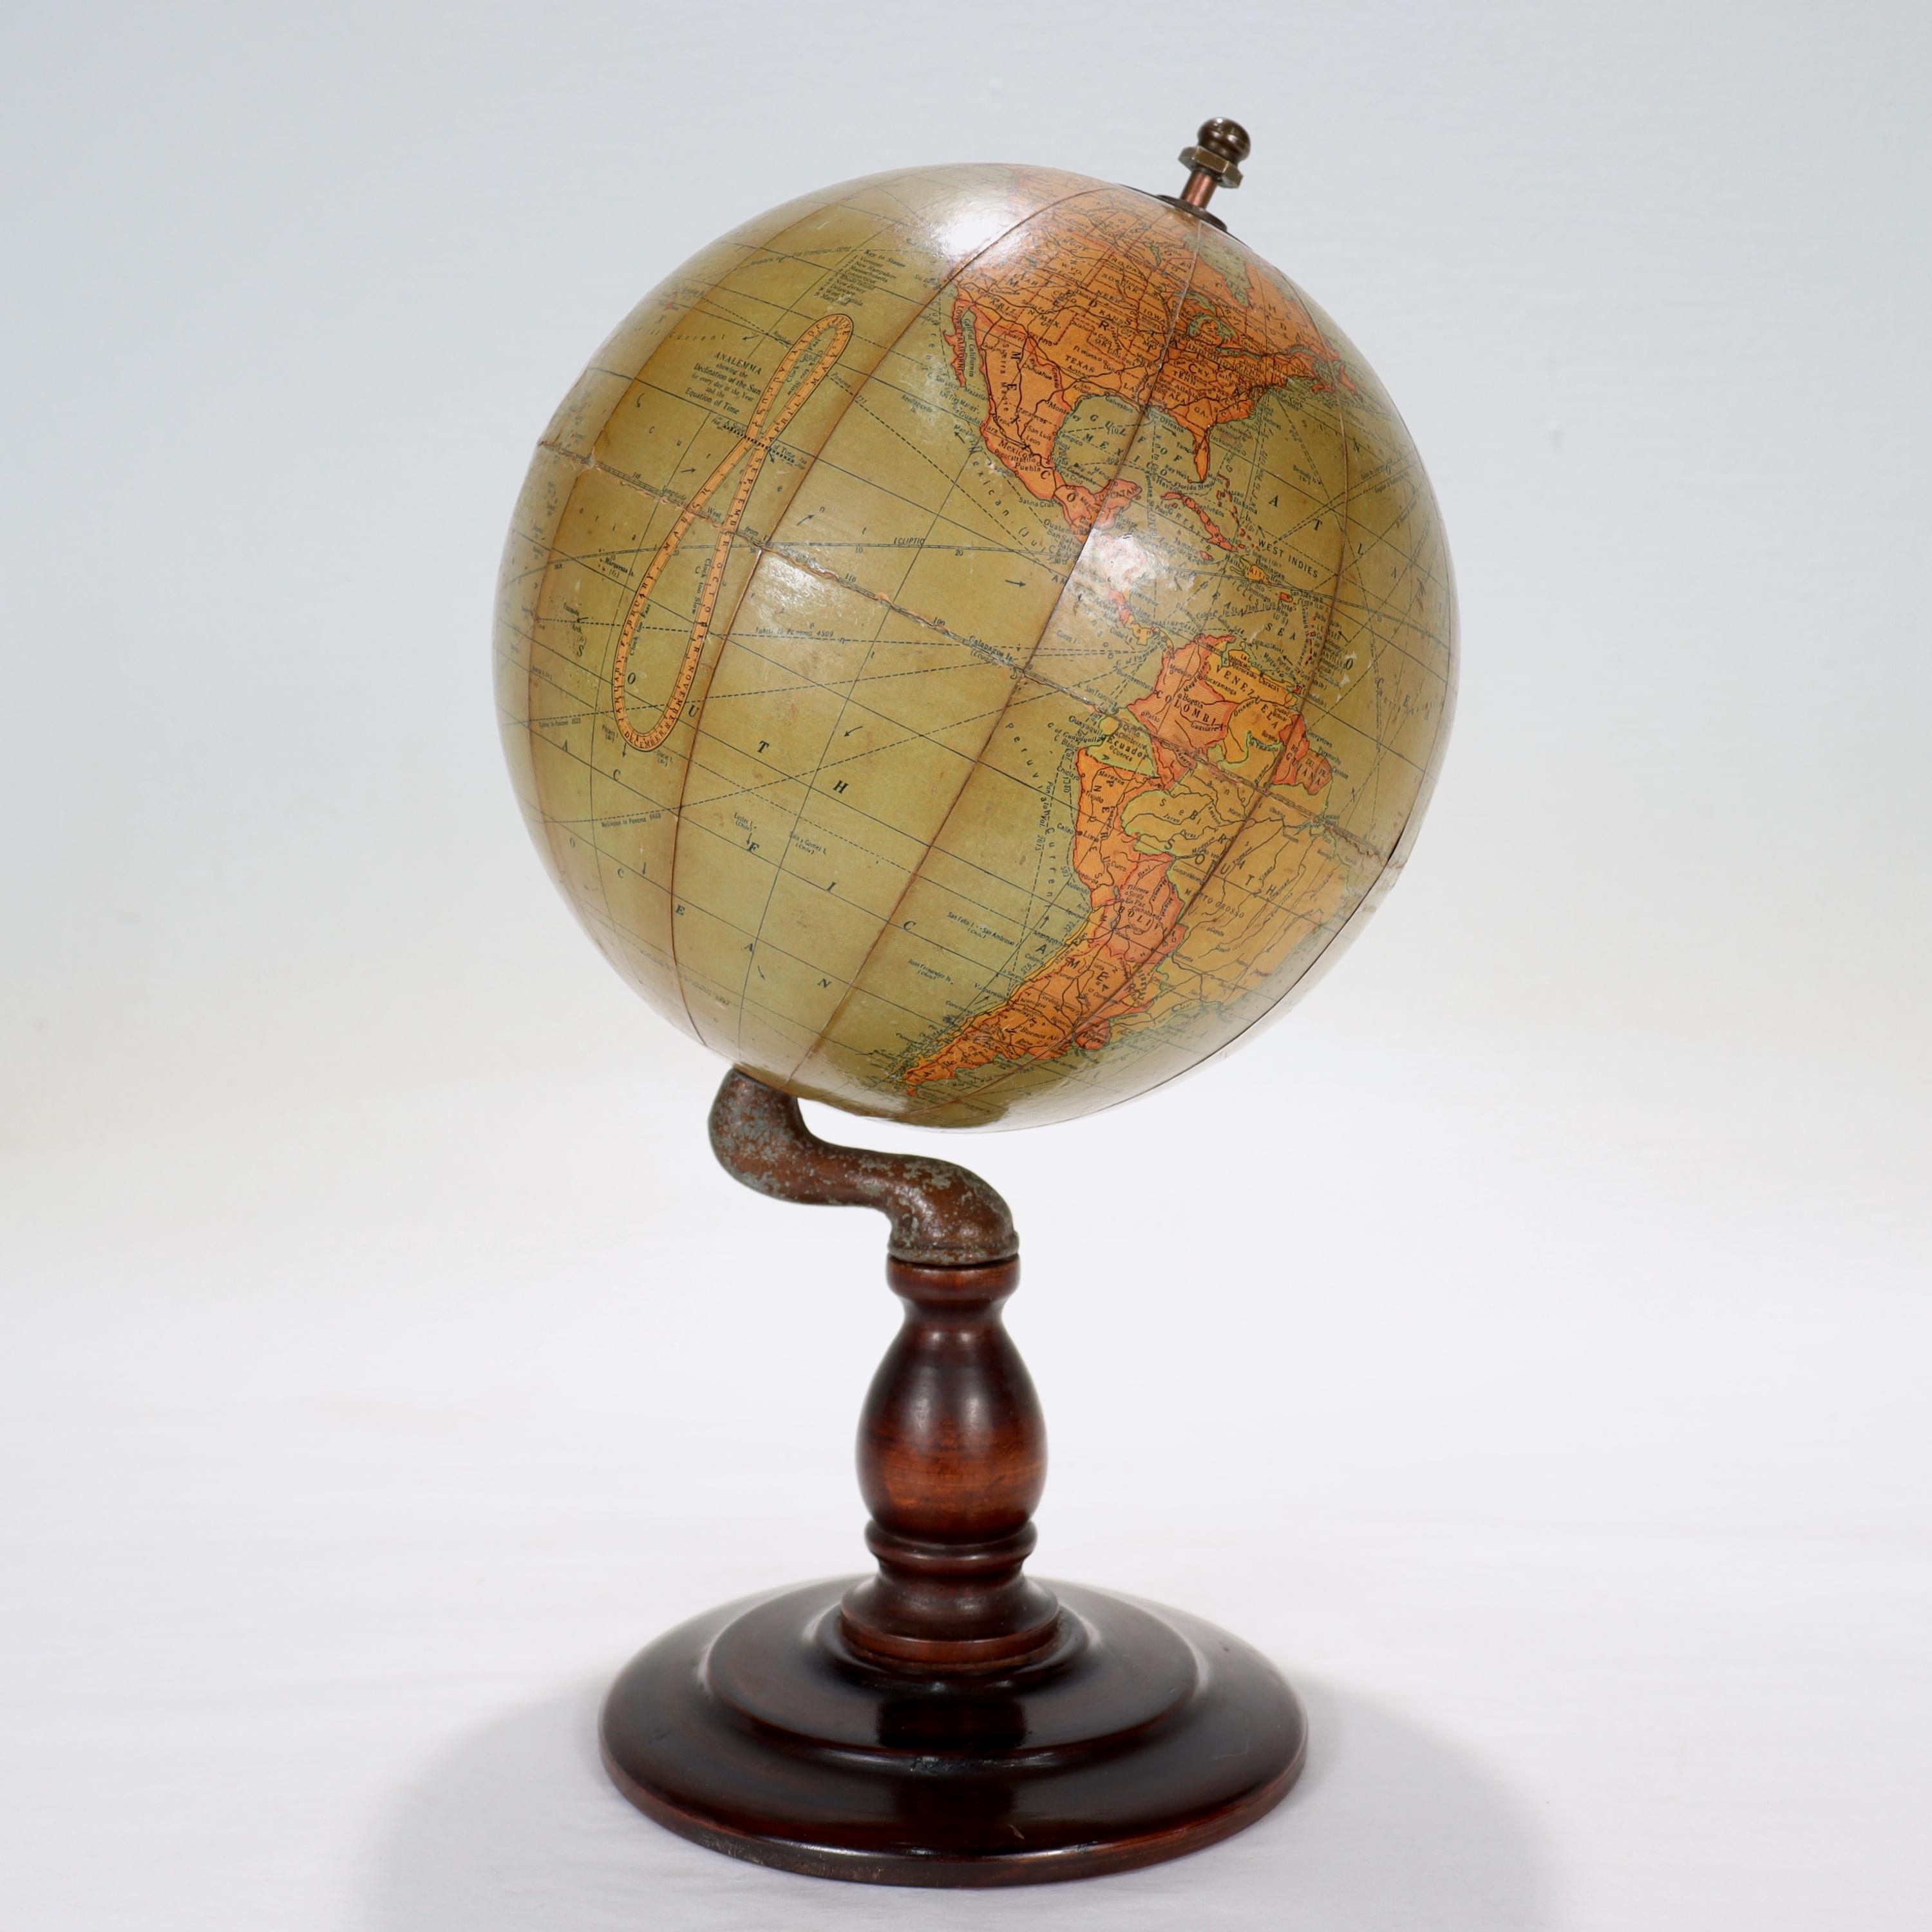 Nous vous présentons ici un beau globe terrestre antique de 6 pouces.
Détails supplémentaires :

Par C.S. Hammond & Co.

Le globe date probablement de 1927 à 1930 en raison du marquage de Leningrad (après 1924), de Constantinople (avant 1930)